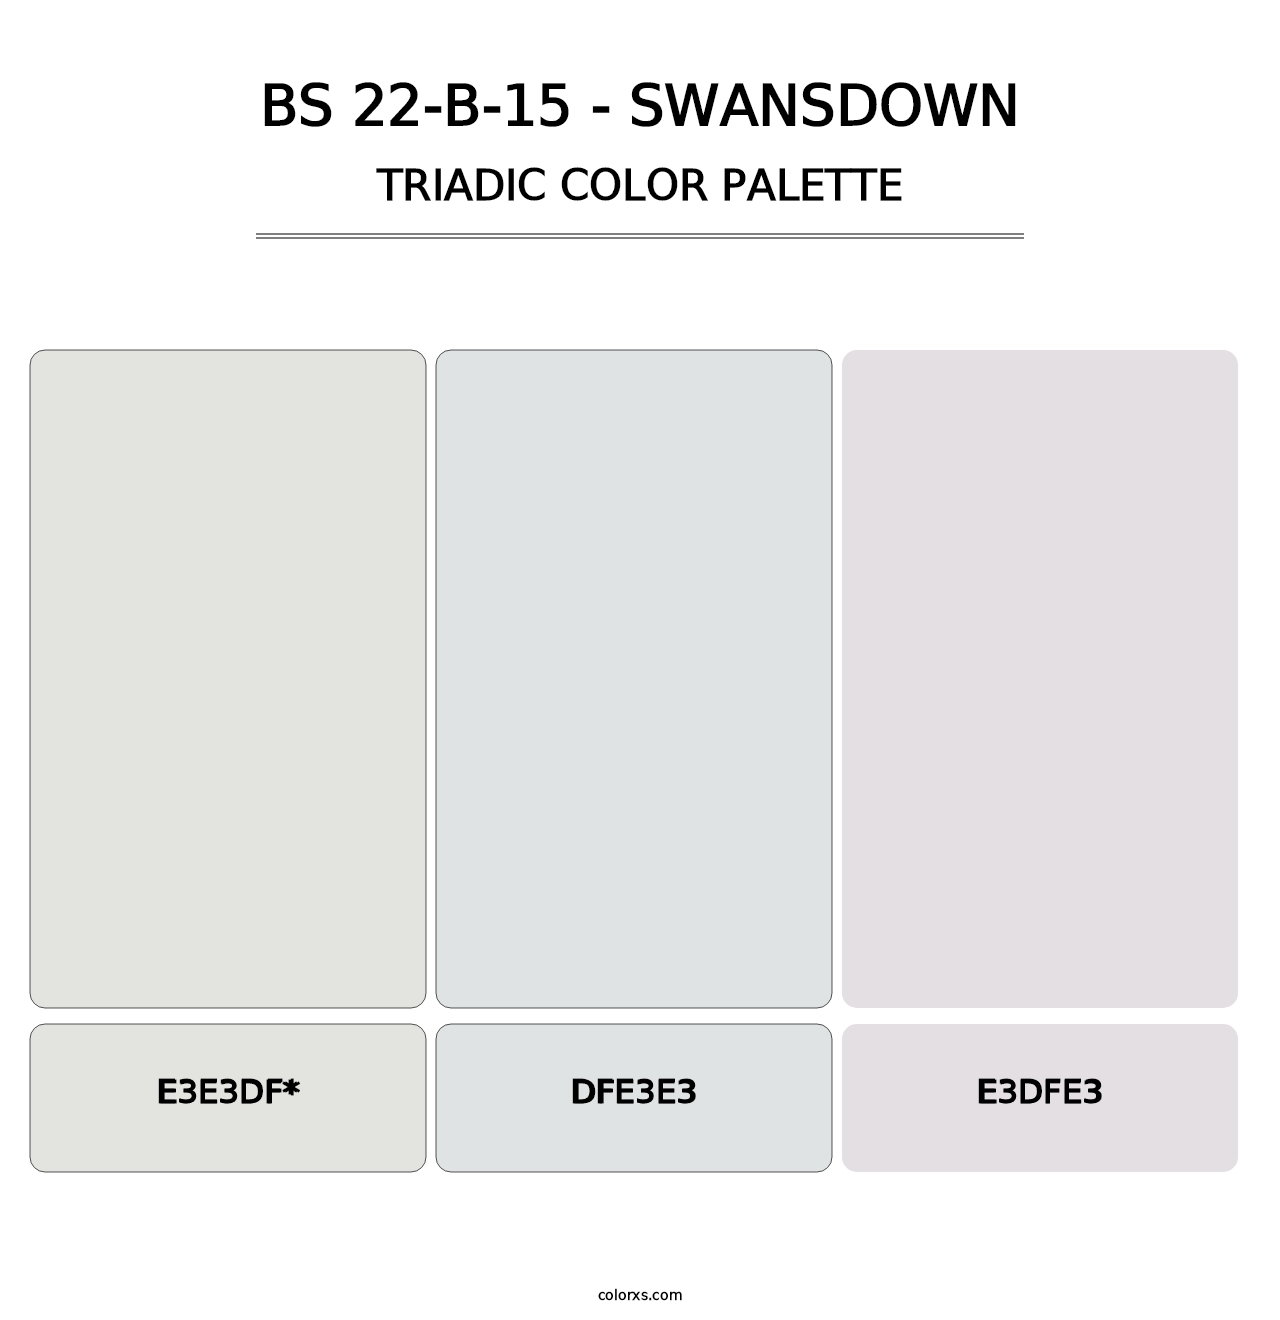 BS 22-B-15 - Swansdown - Triadic Color Palette